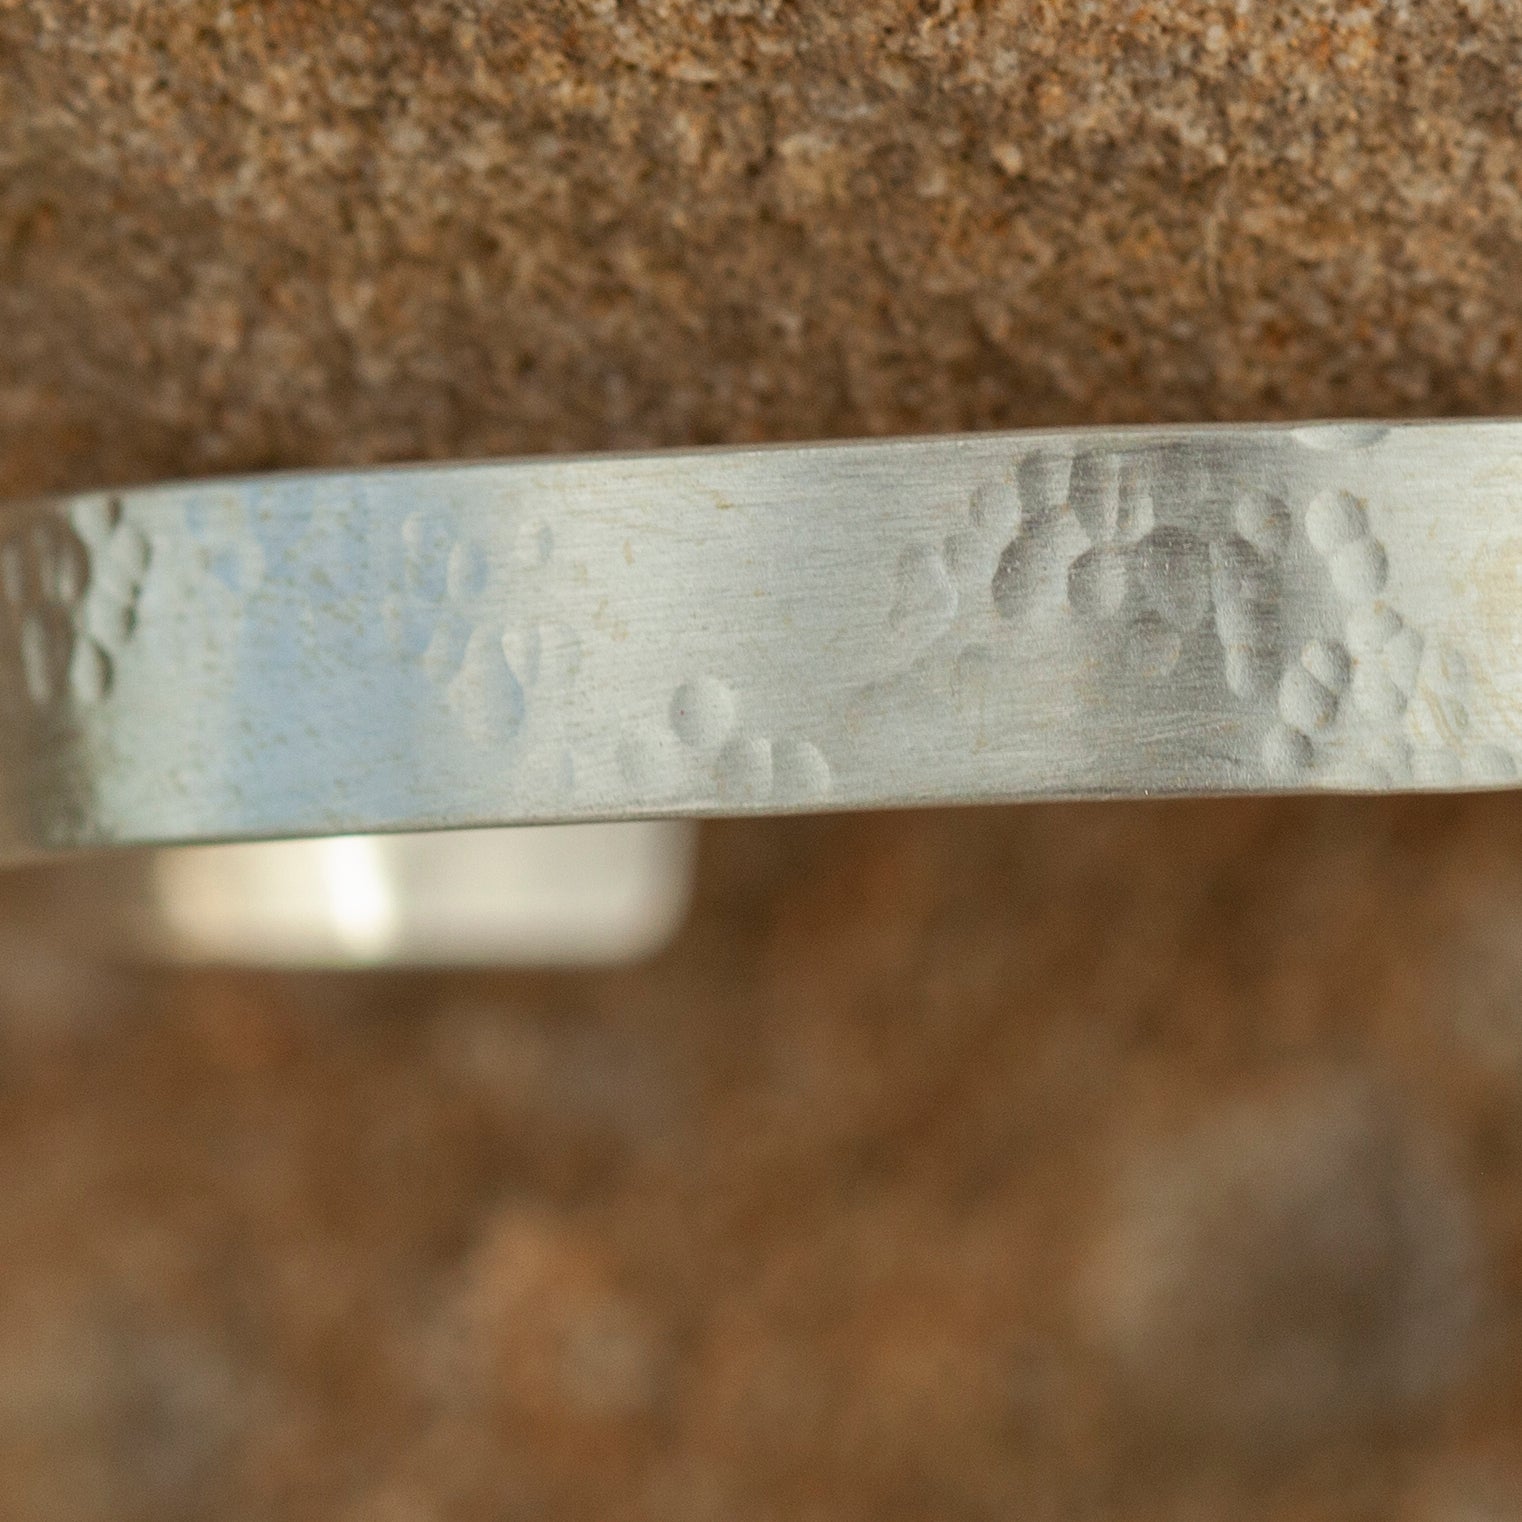 OOAK Simple flat bracelet in silver #3 • size 5,5cm (ready-to-ship)